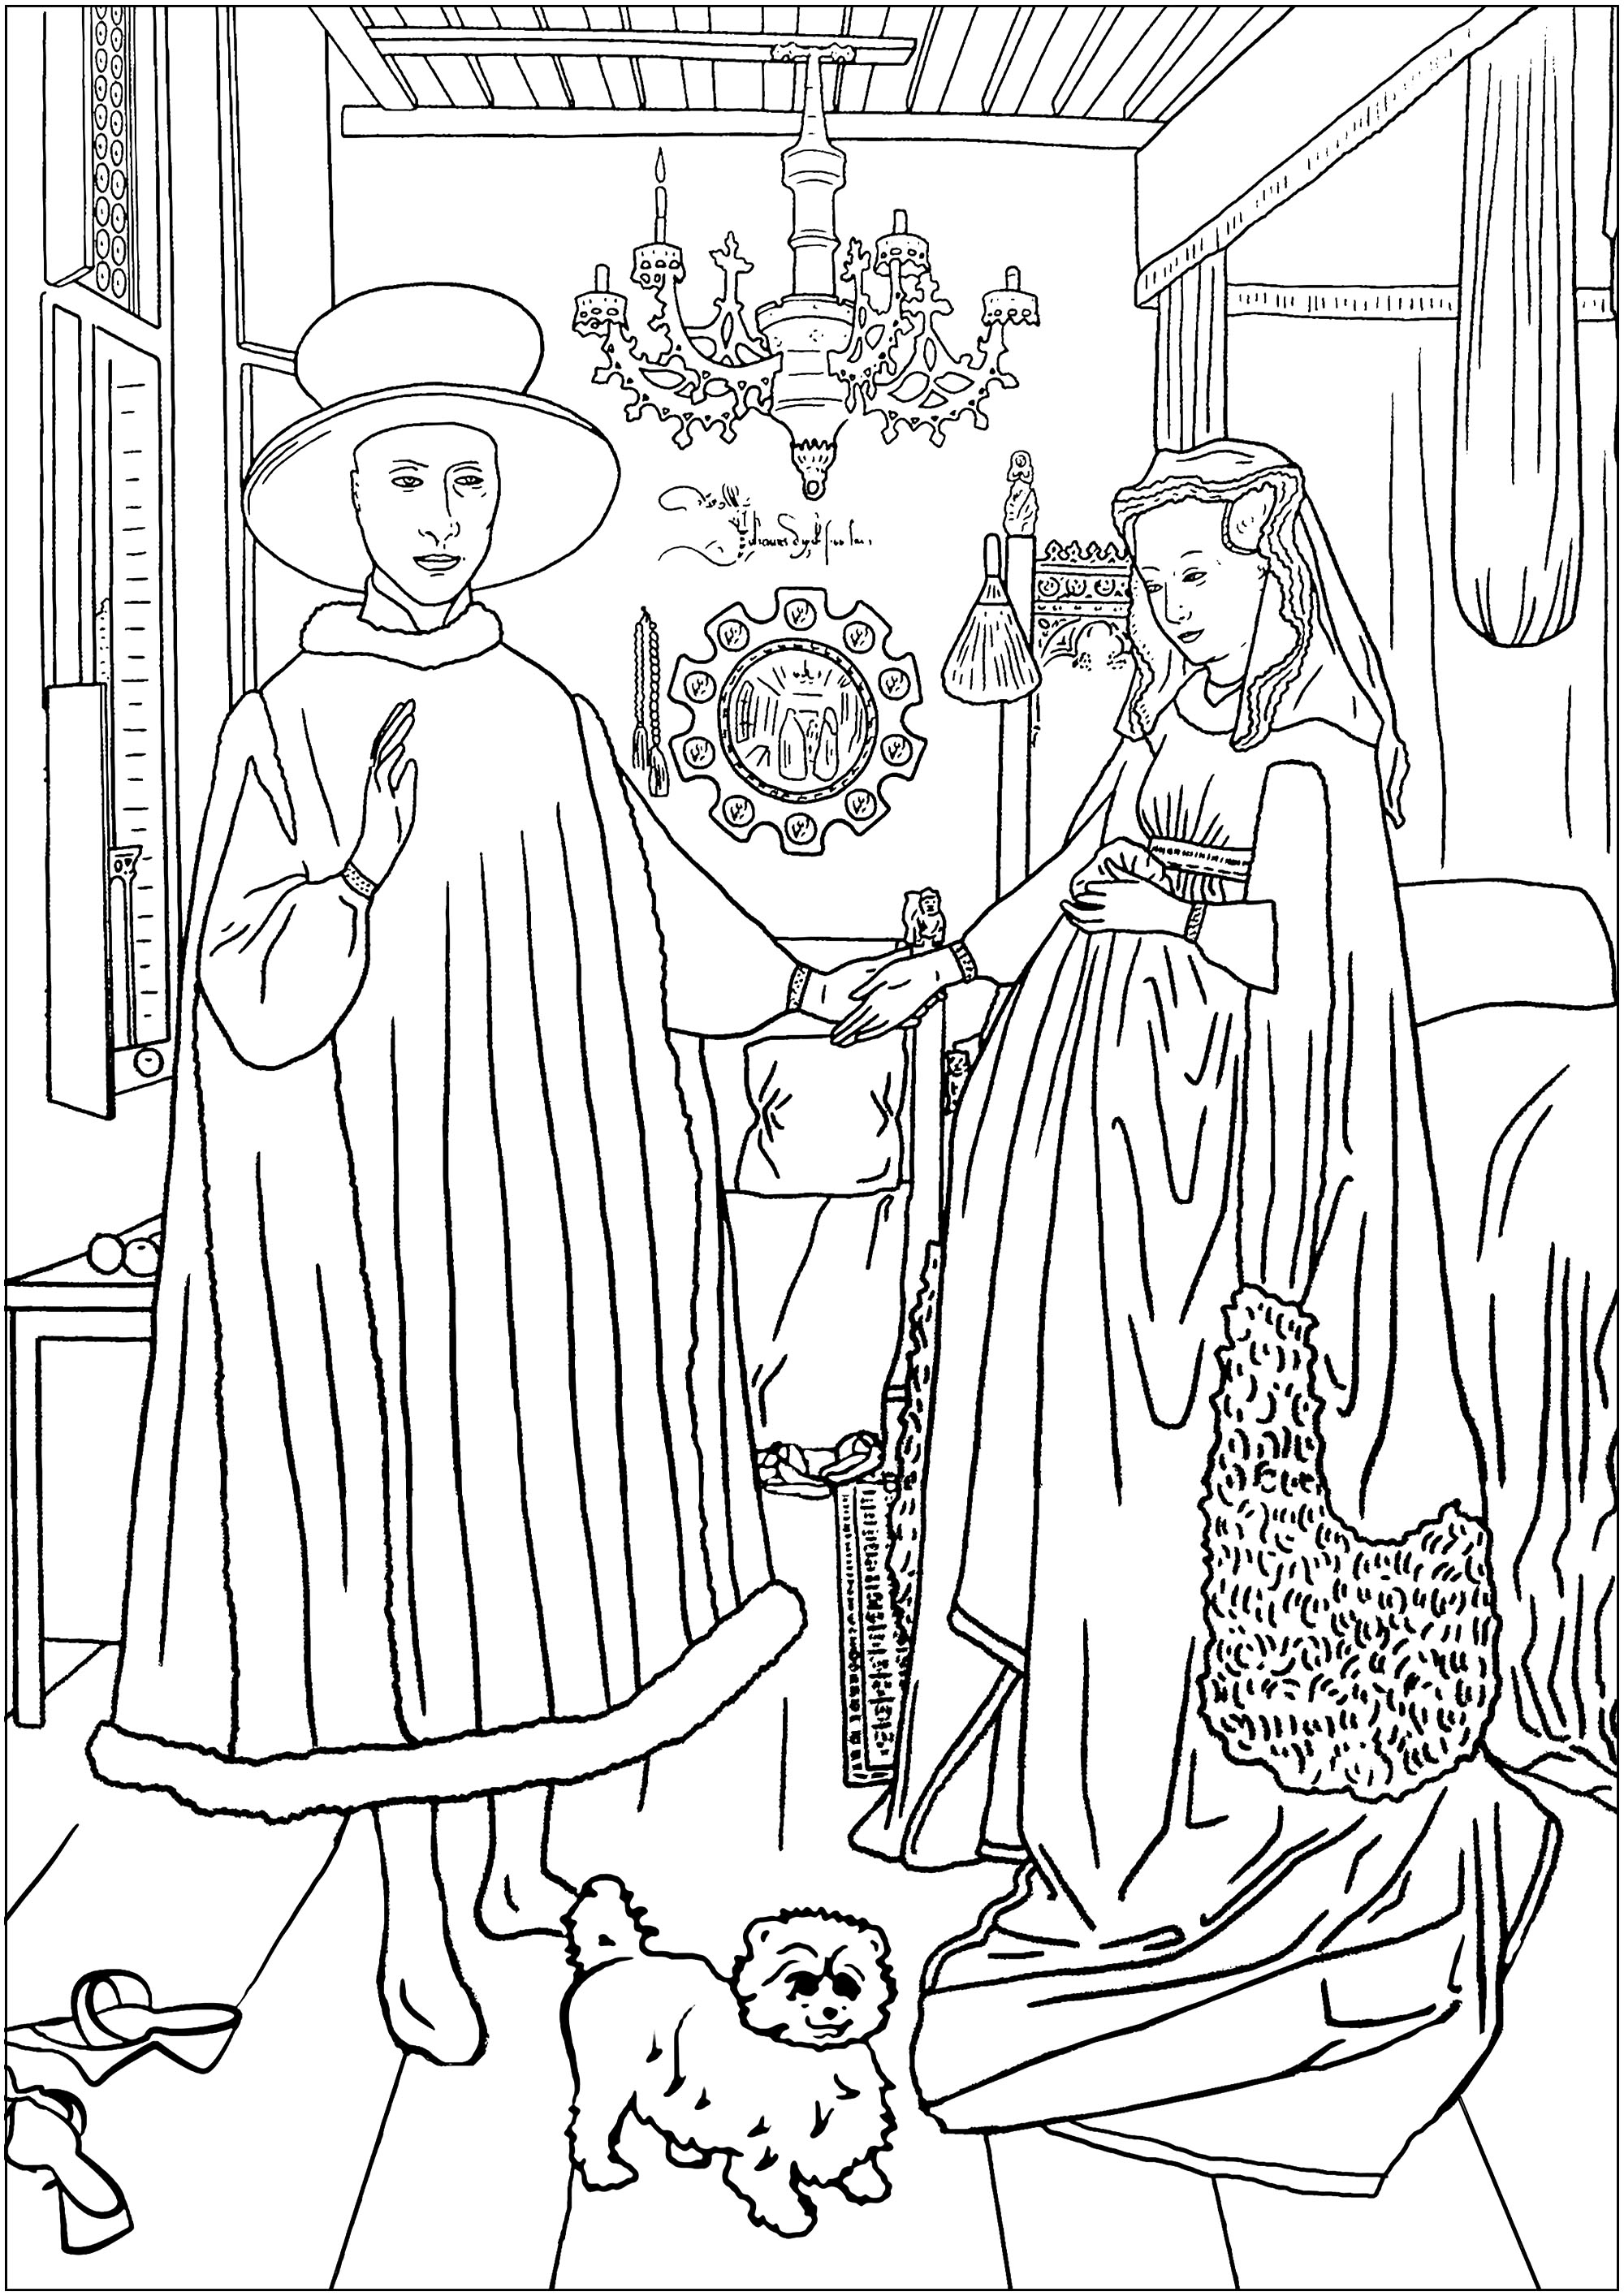 Ausmalbild nach dem Arnoflini-Porträt von Jan Van Eyck